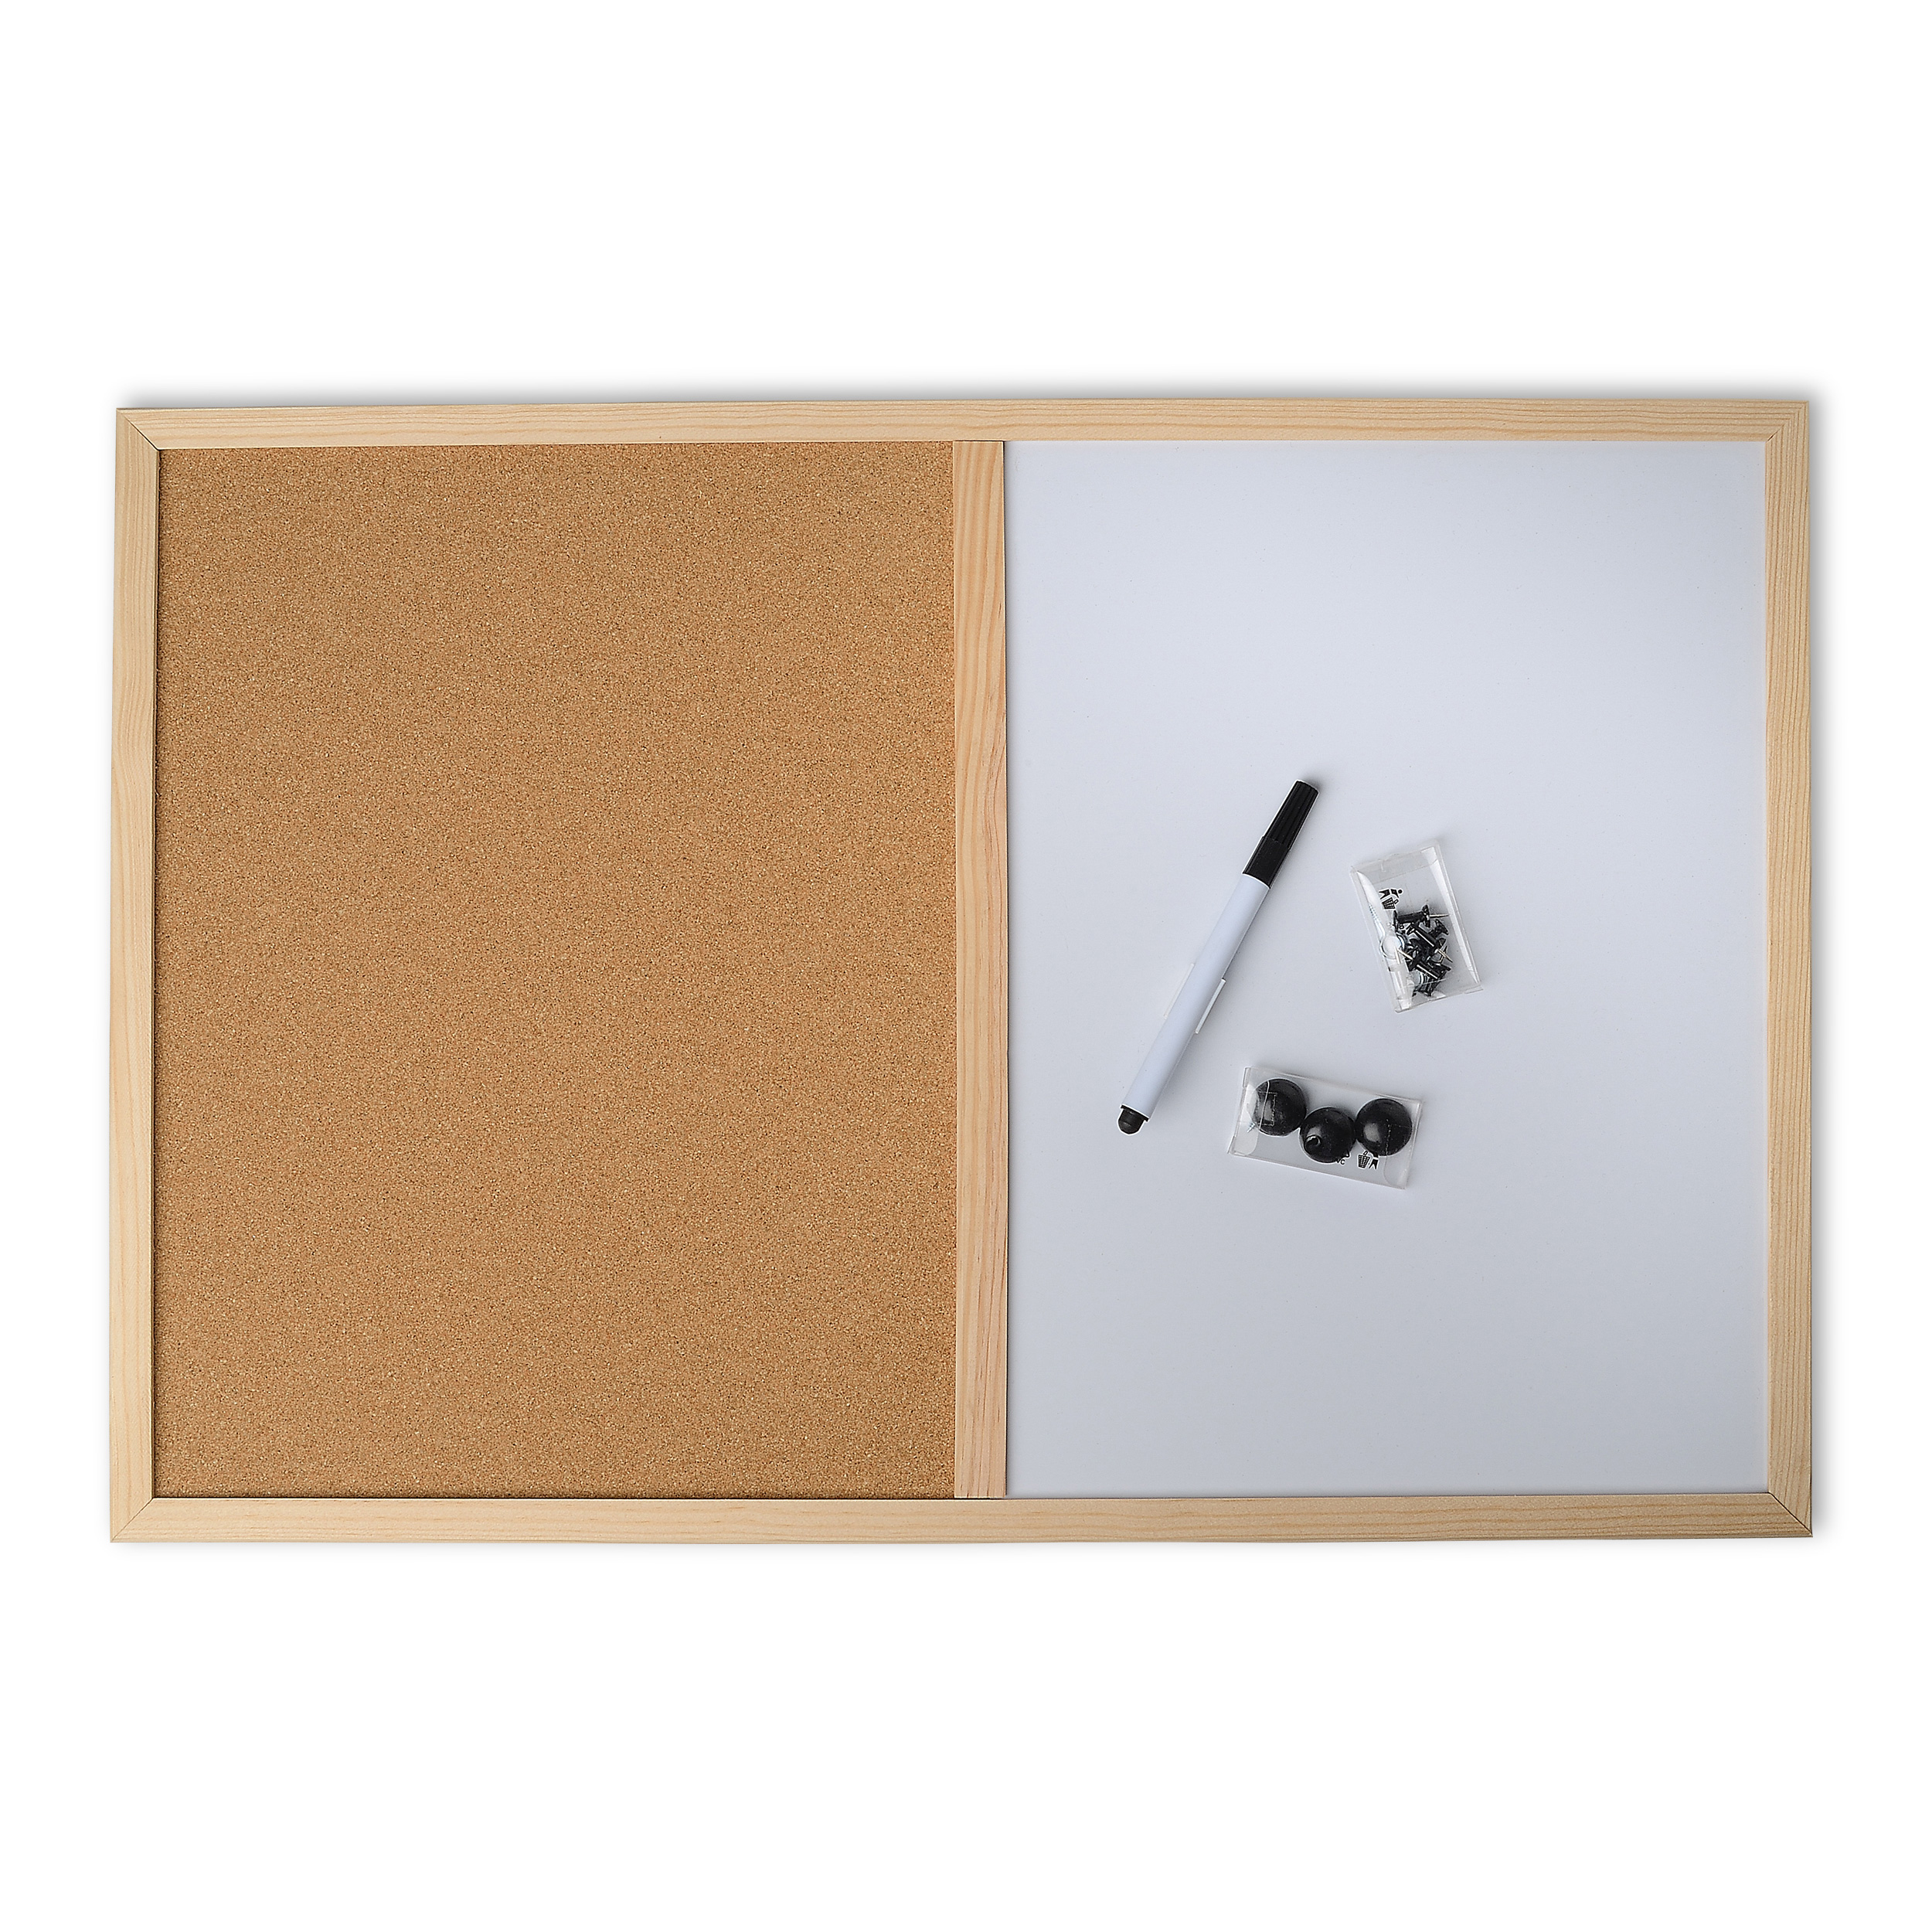 DECOSA Tableau liège + Mémo (feutre et punaises) - 600 mm x 400 mm x 15 mm